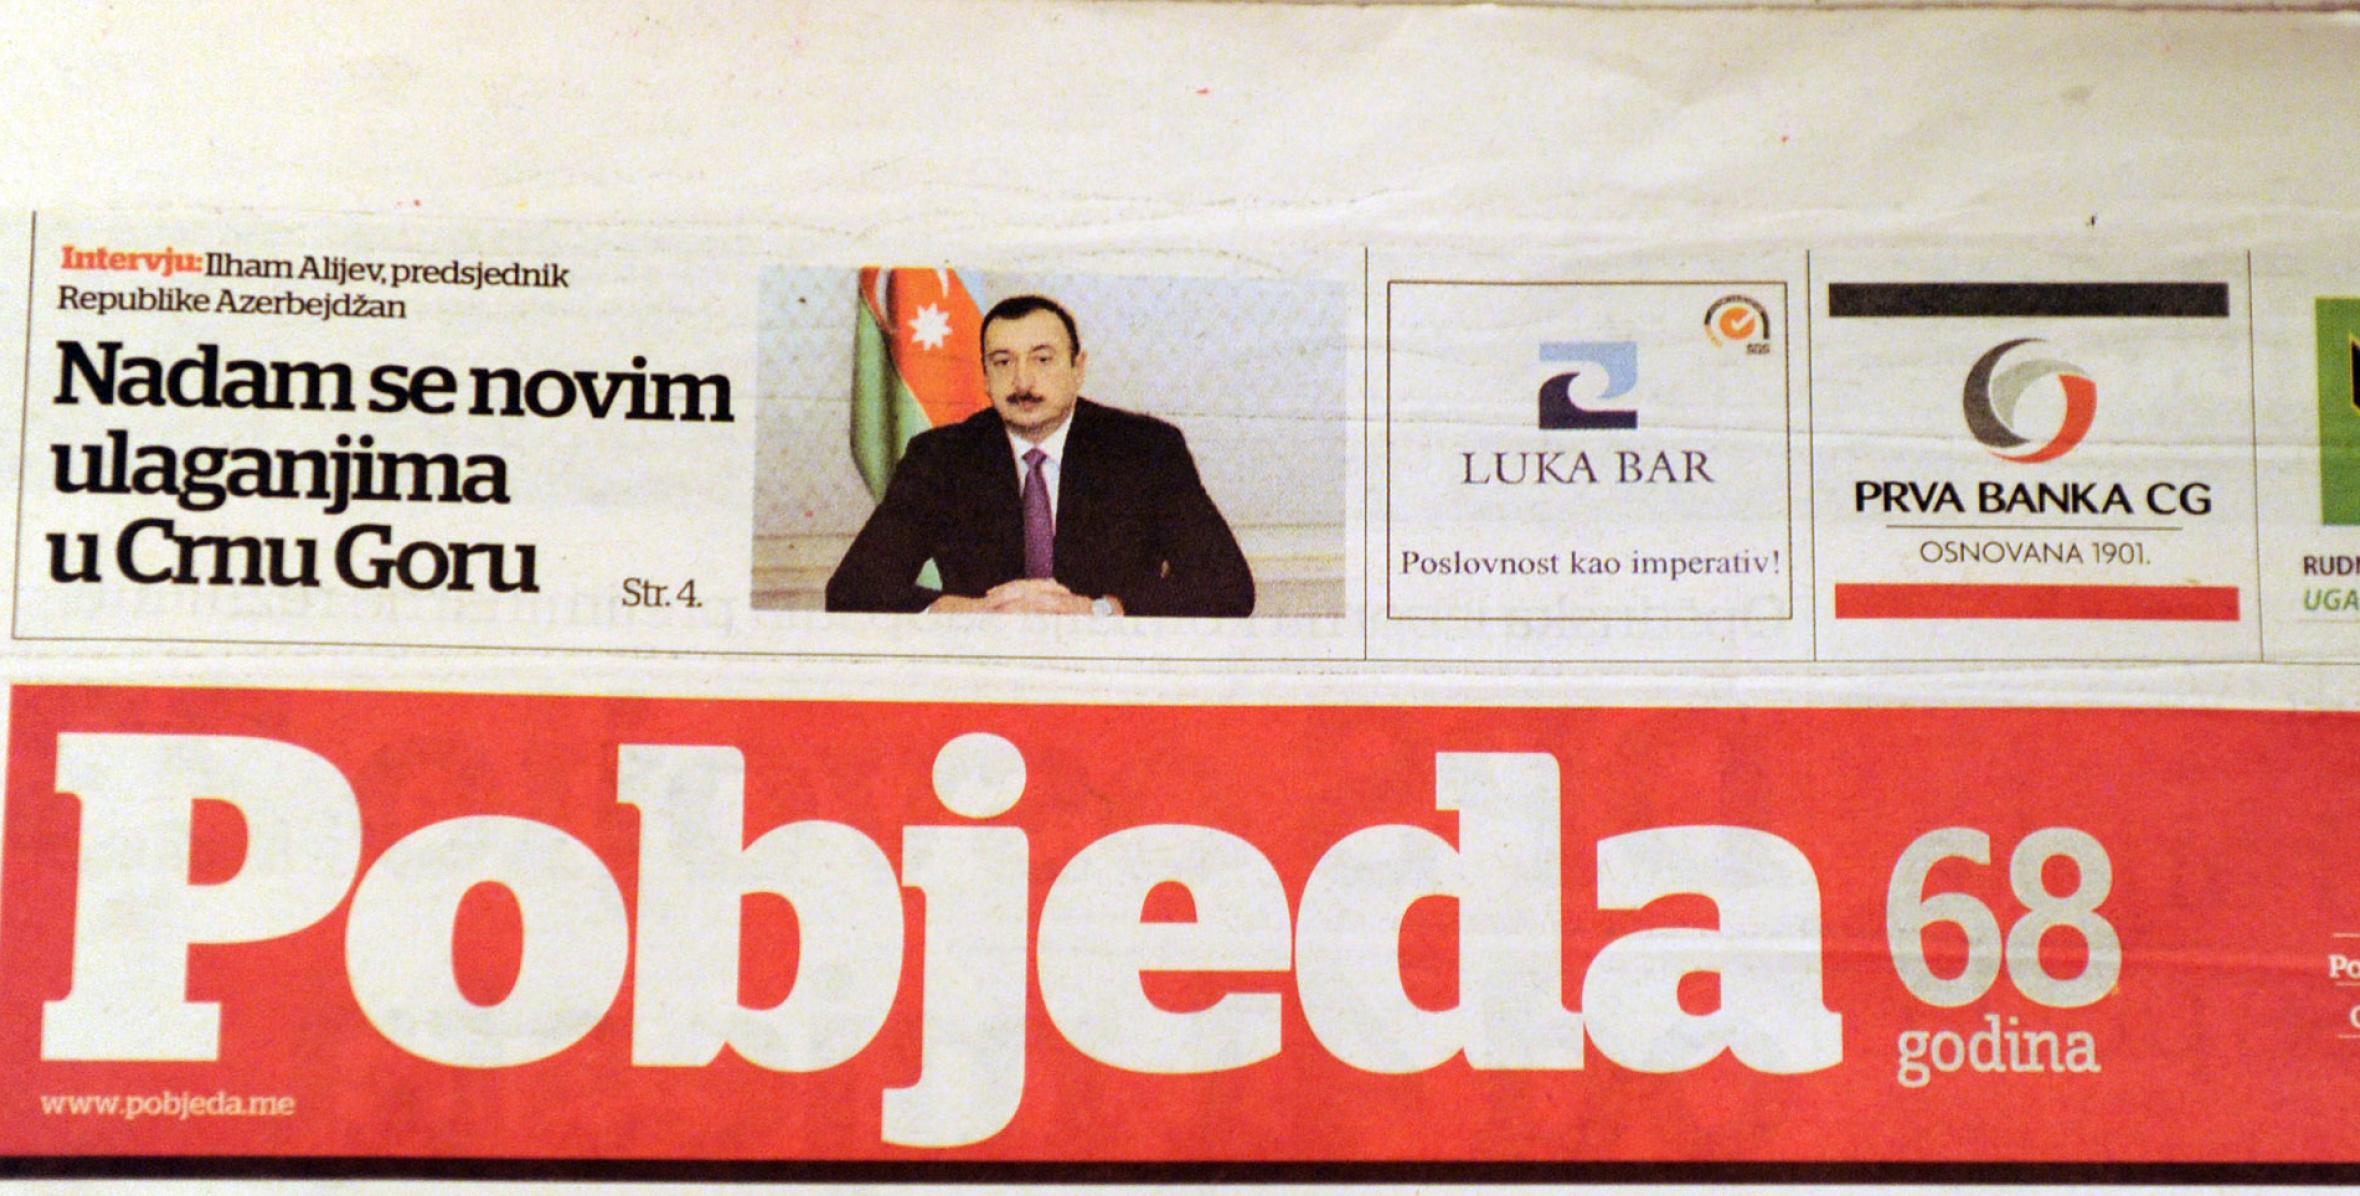 Ilham Aliyev gave an interview to Montenegrin newspaper "Pobjeda"